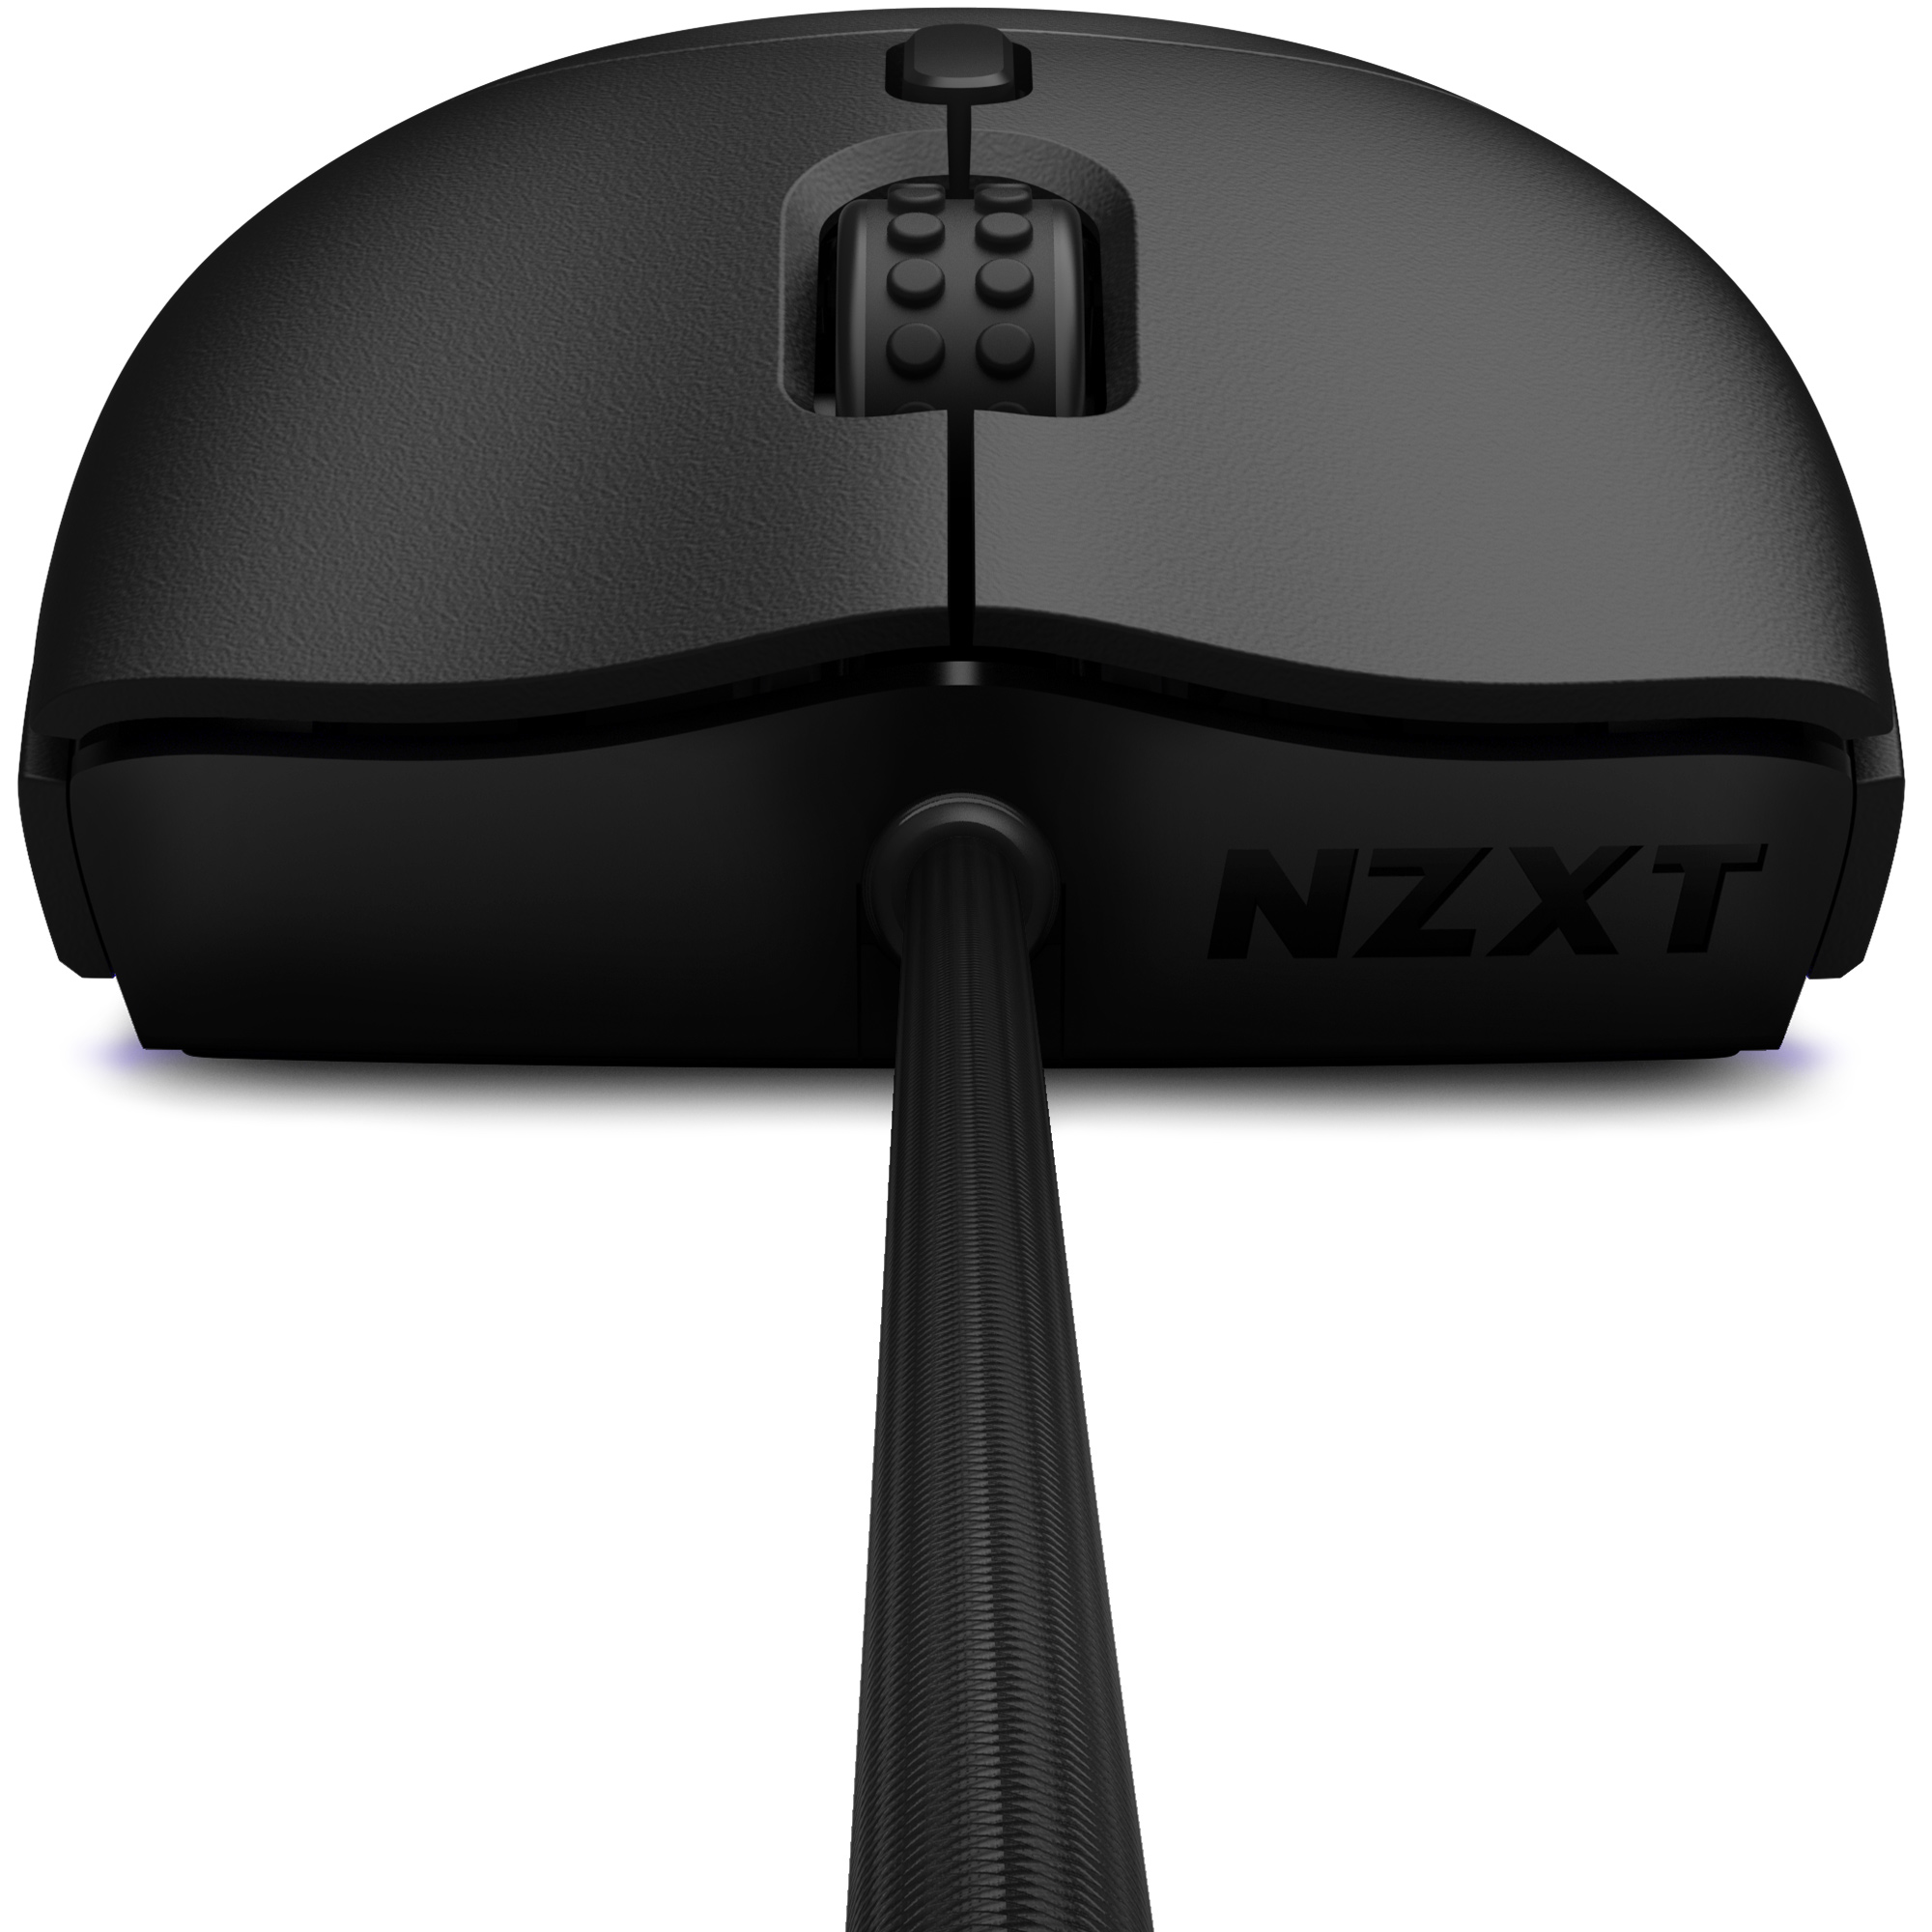 NZXT - Ratón NZXT Lift RGB Negro